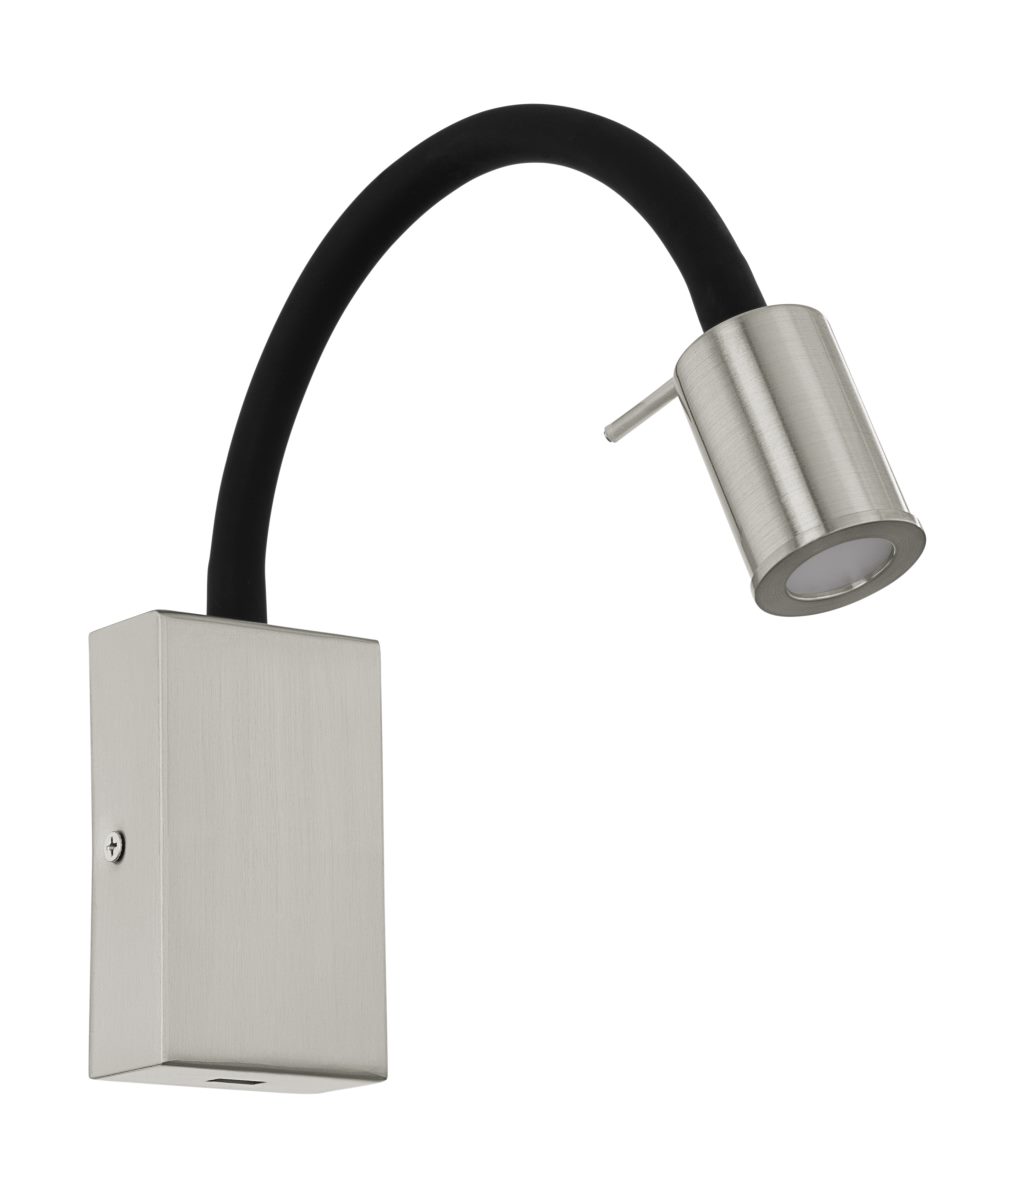 EGLO TAZZOLI LED Wandlampe 380lm nickel-matt mit USB Ladebuchse unter Wohnraumleuchten > Wohnraumleuchten